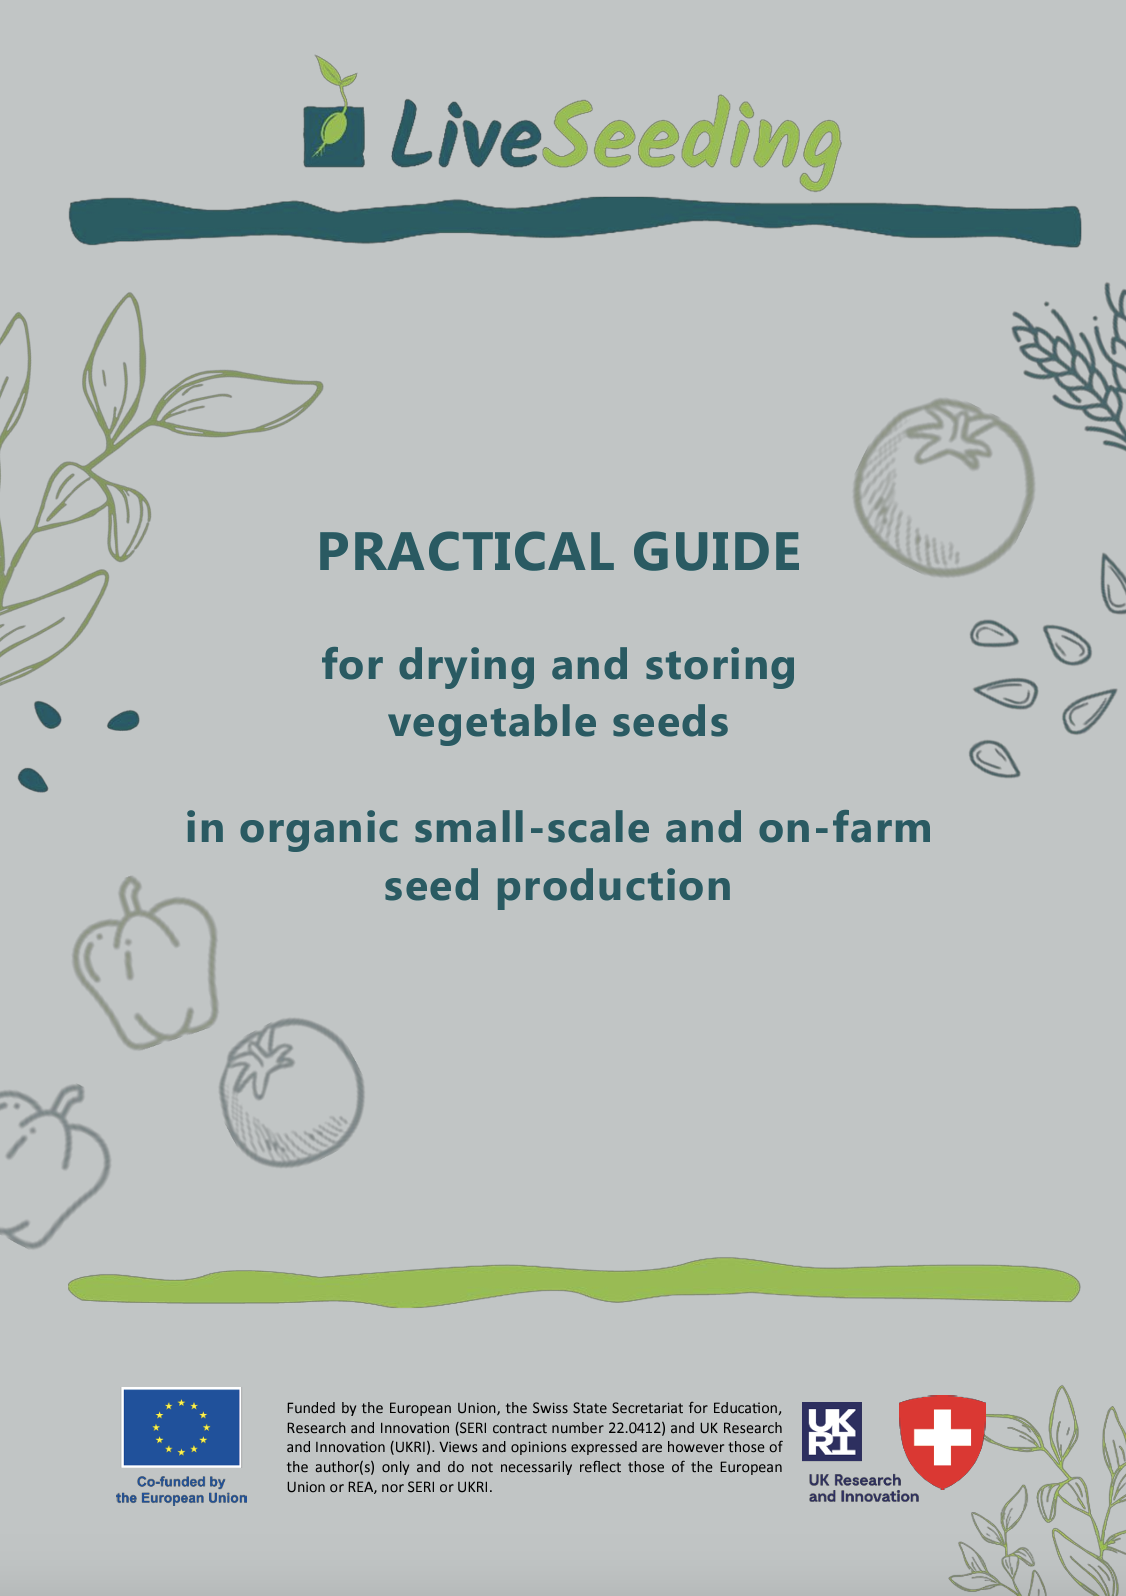 Praktyczny przewodnik dotyczący suszenia i przechowywania nasion warzyw w ekologicznej produkcji nasion na małą skalę i w gospodarstwach rolnych